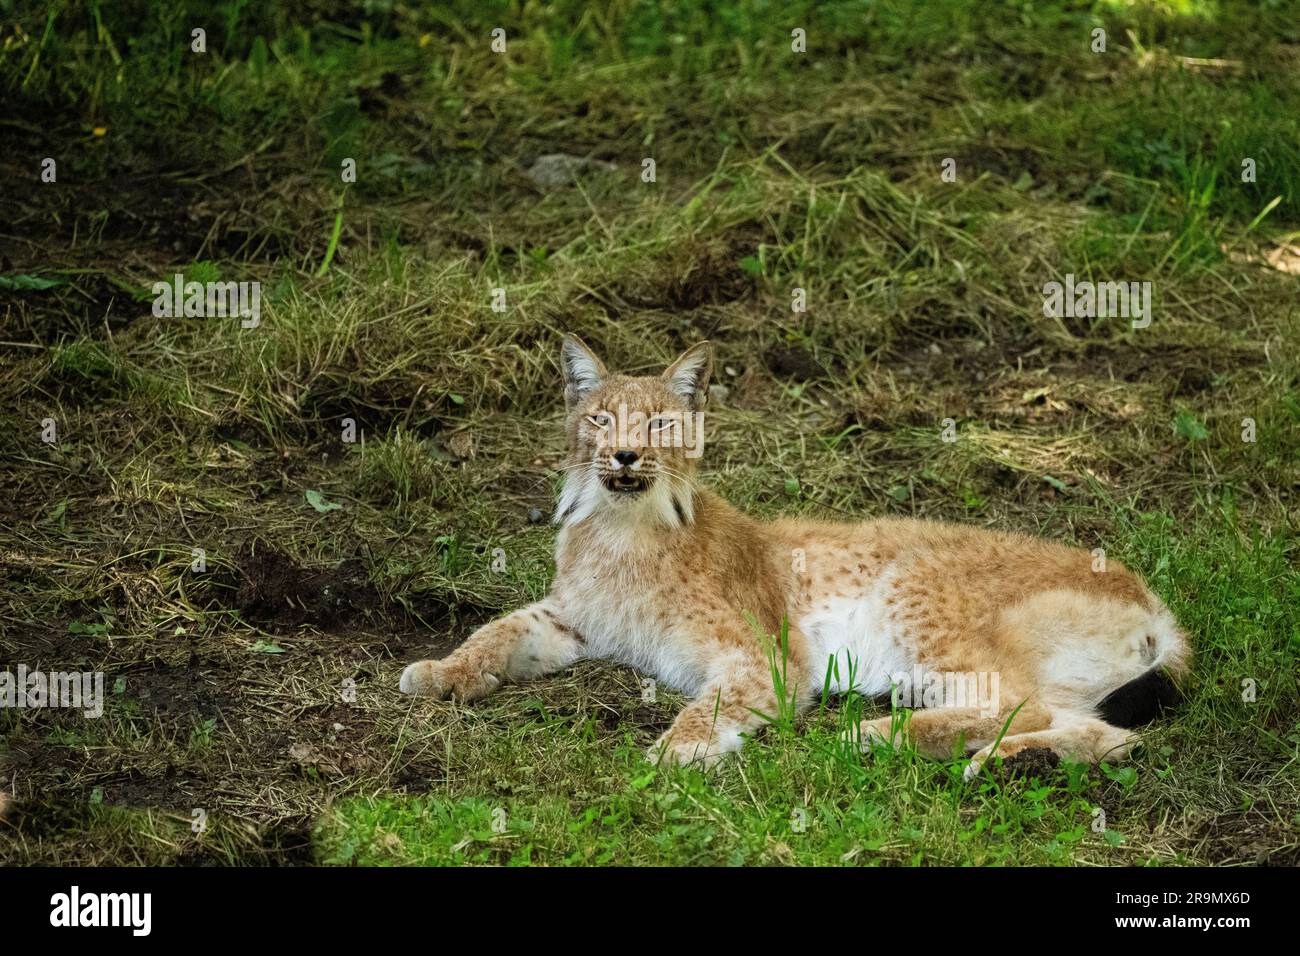 Le lynx ibérique (Lynx pardinus) est une espèce sauvage de chat endémique de la péninsule ibérique, dans le sud-ouest de l'Europe. Il est répertorié comme étant en voie d'extinction sur le rouge de l'UICN Banque D'Images